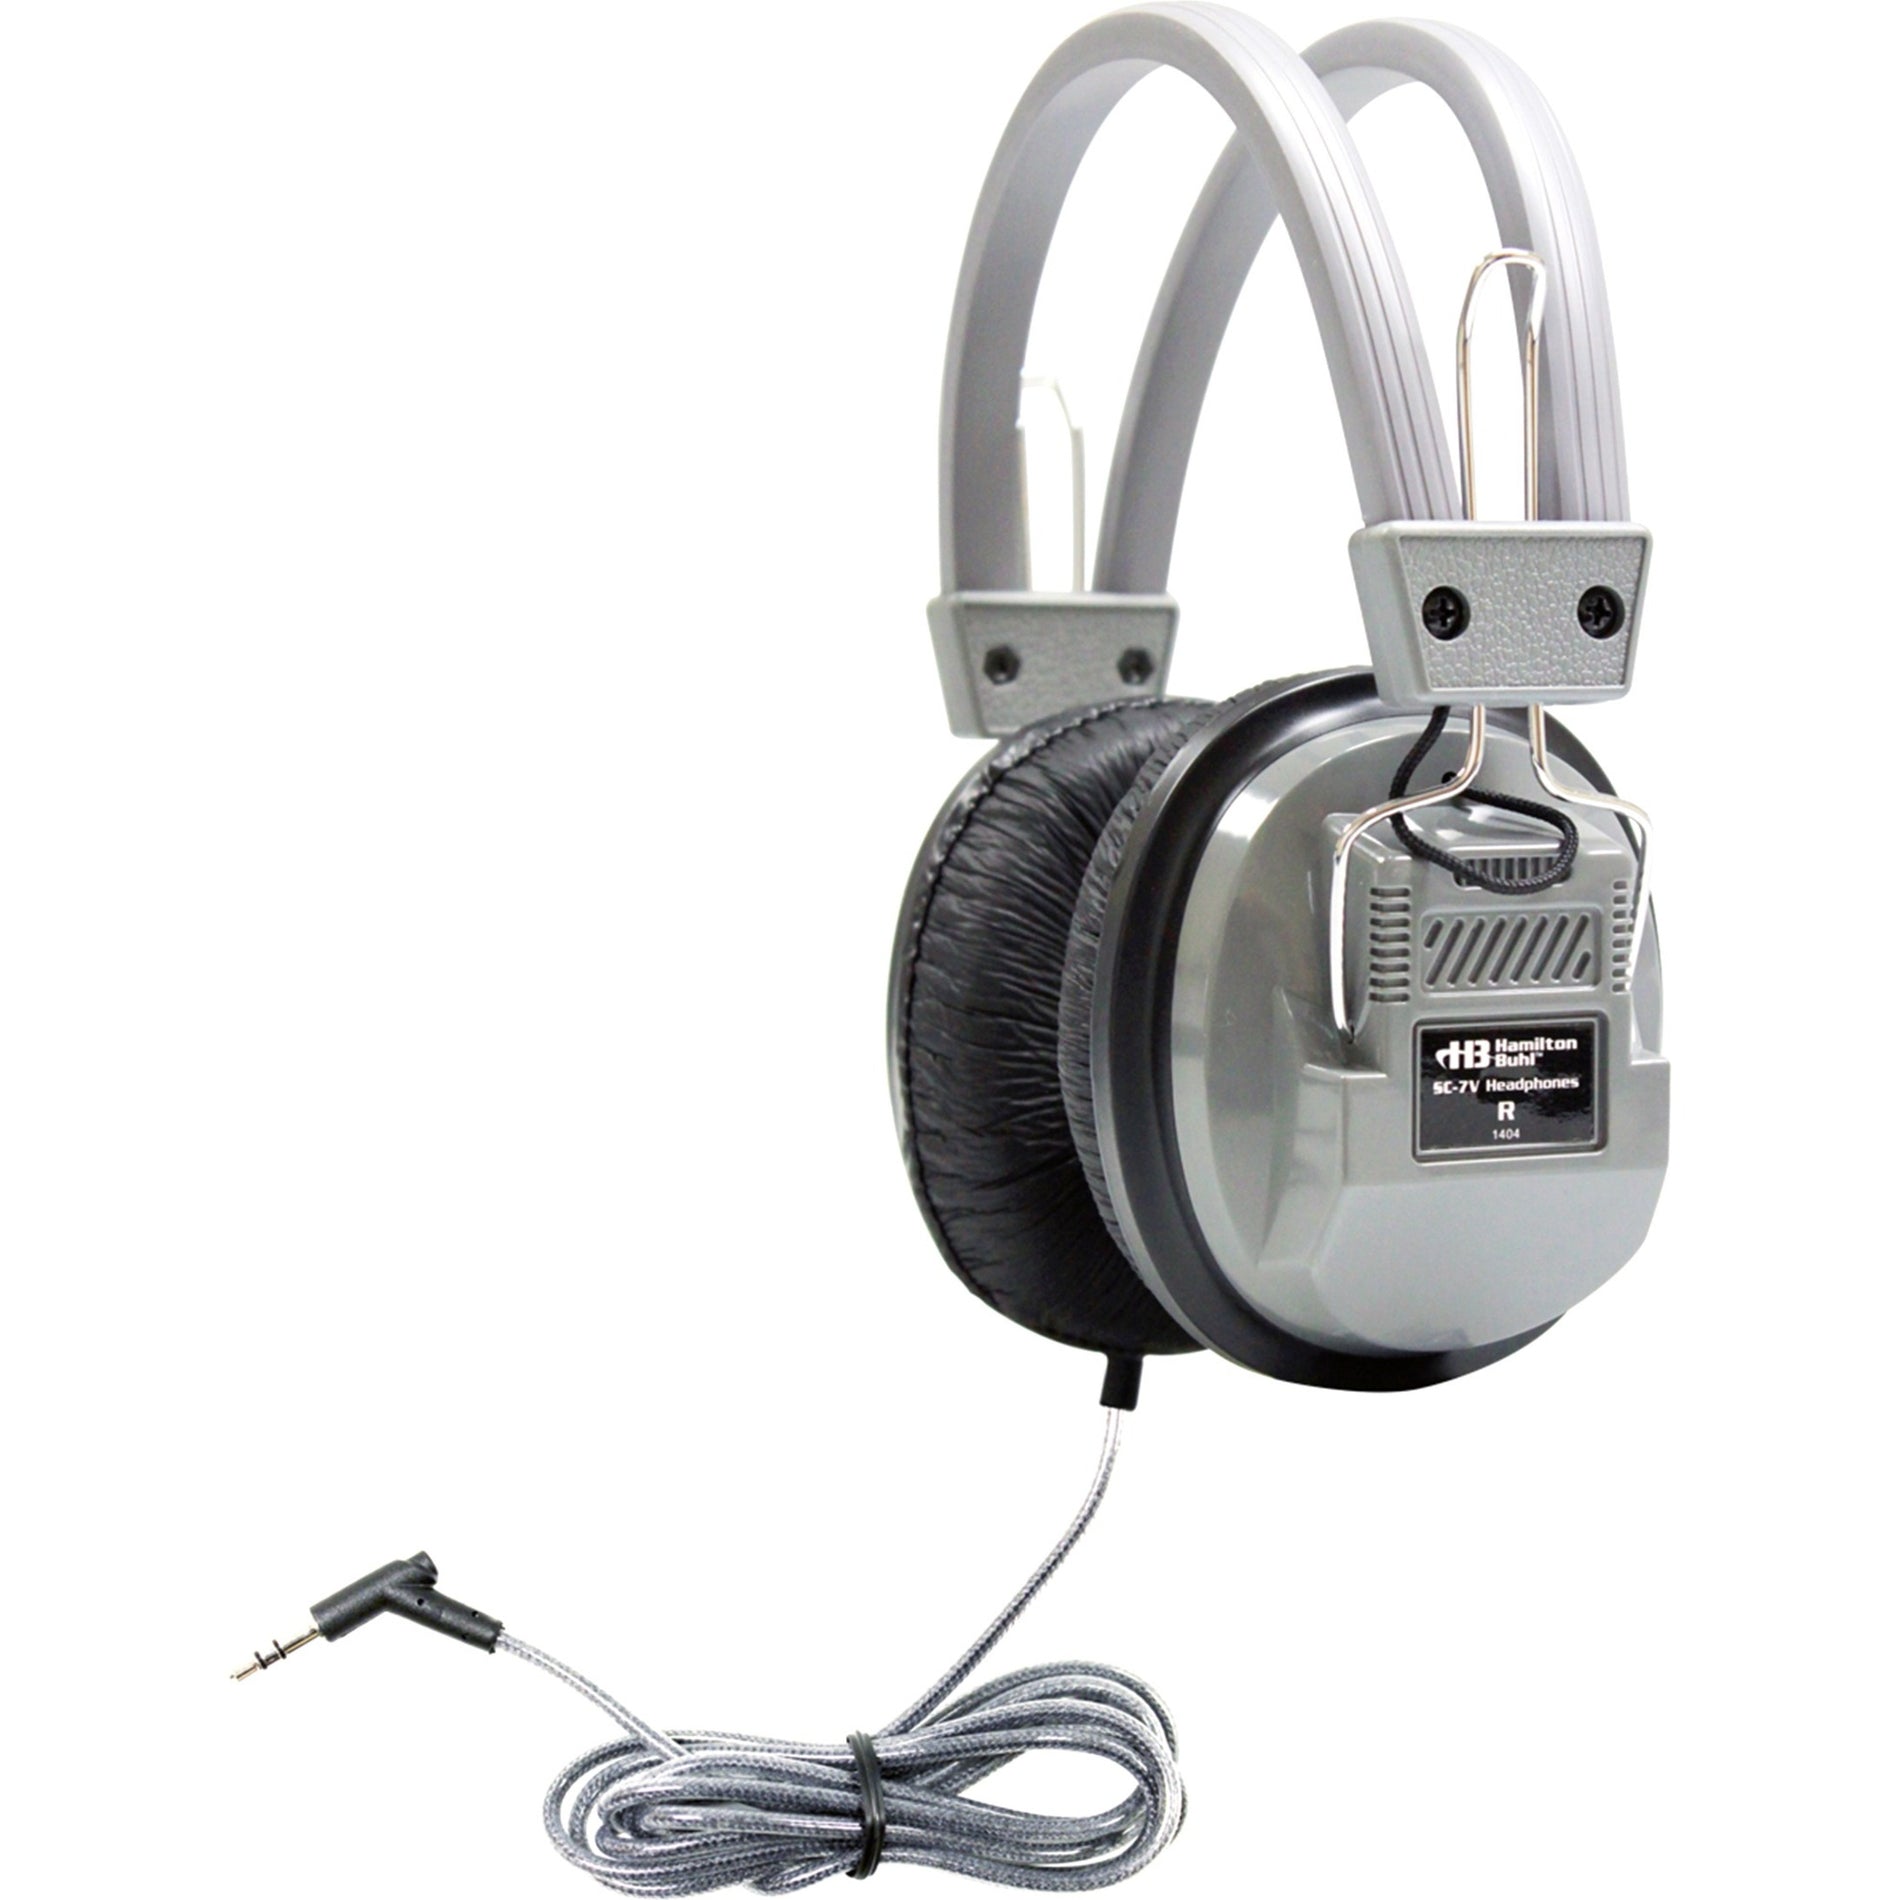 Cuffie stereo Deluxe per la scuola Hamilton Buhl SC-7V con connettore da 35 mm e controllo del volume cuffie over-ear con isolamento acustico cavo privo di groviglio e design robusto.